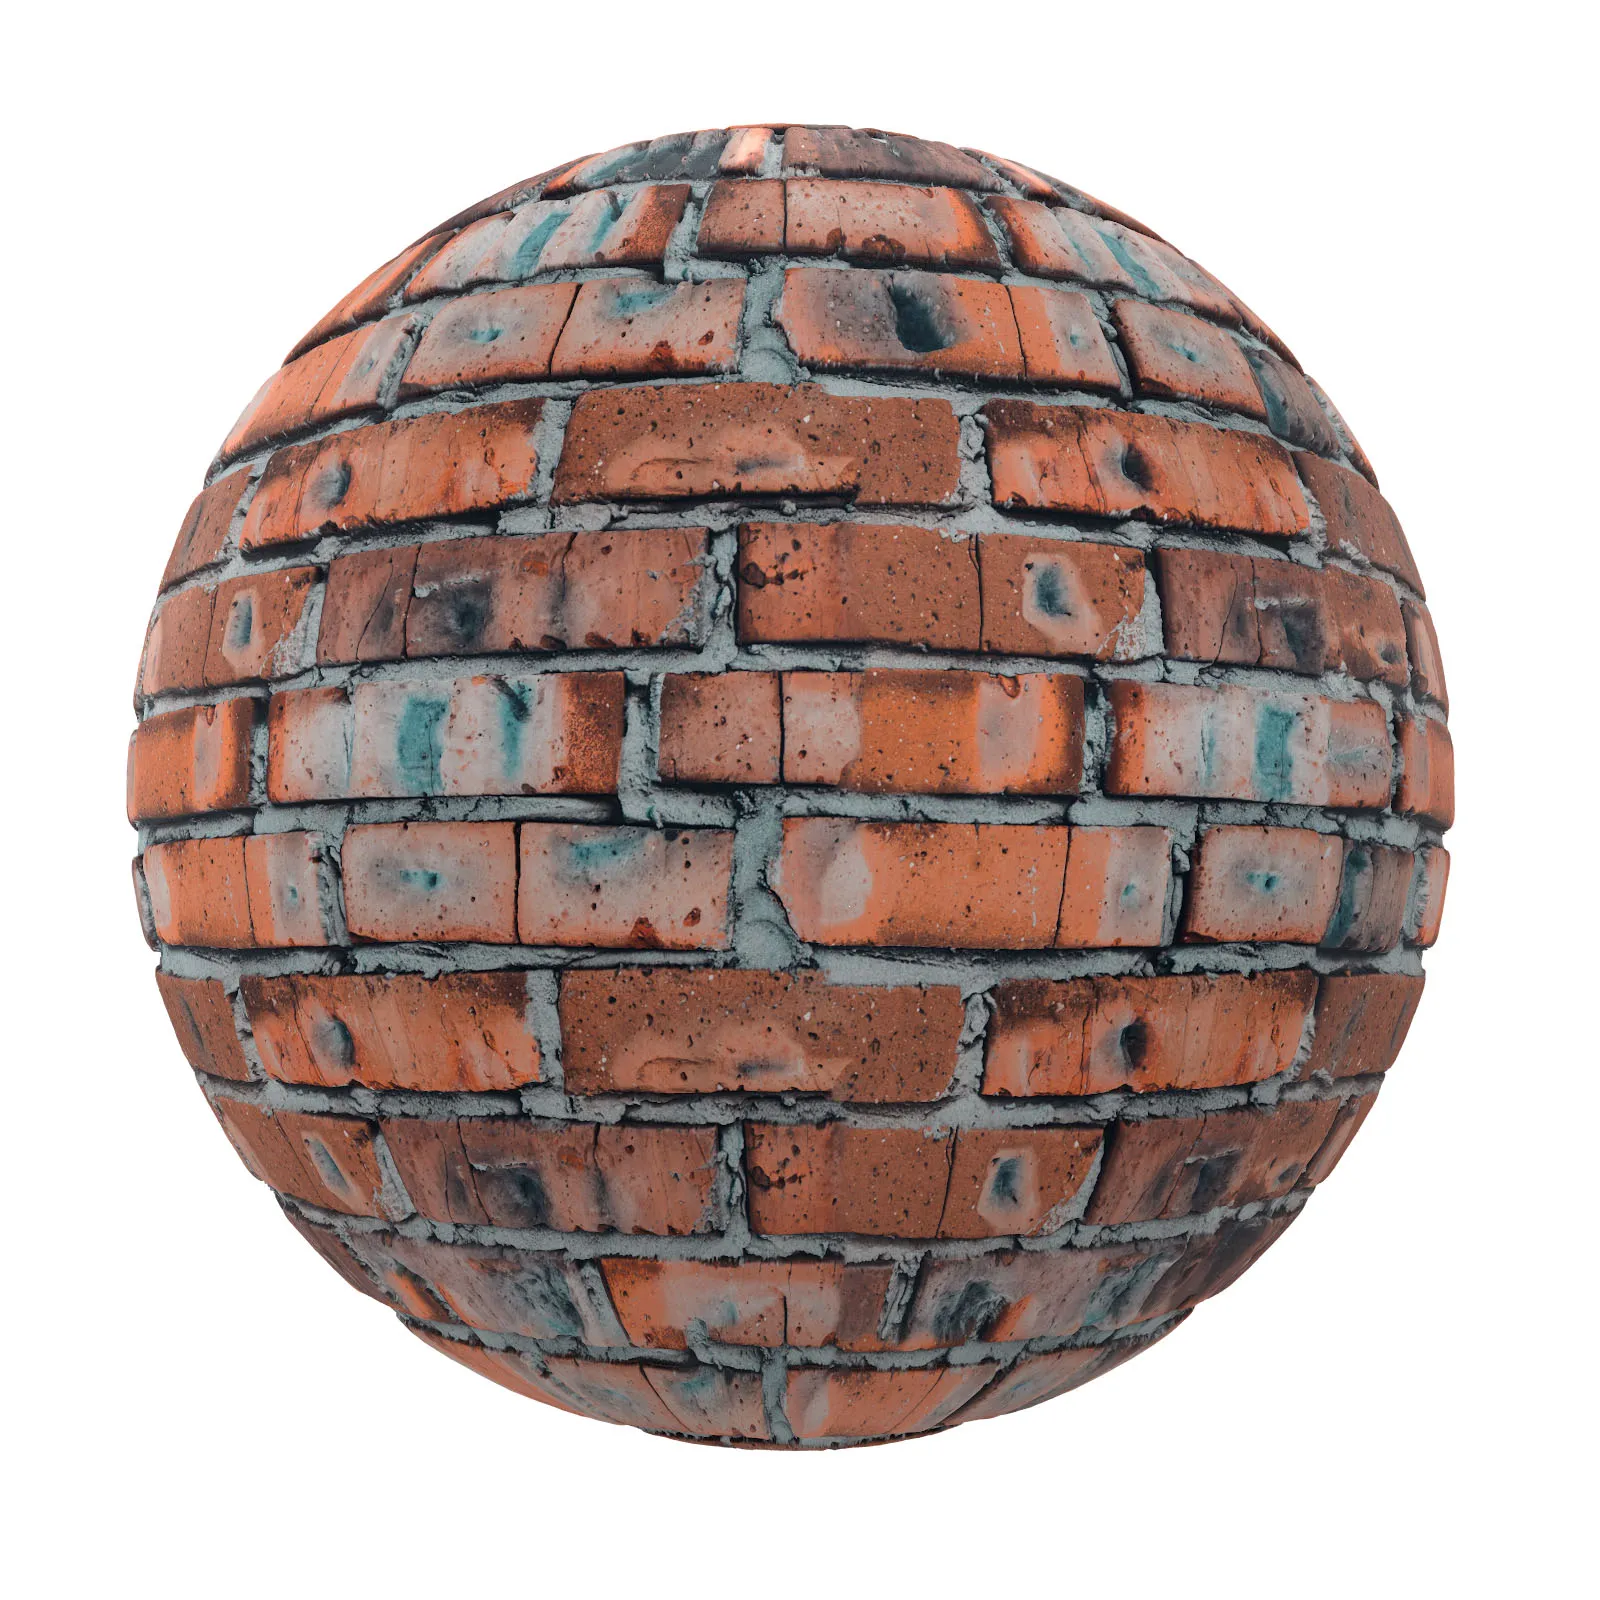 PBR CGAXIS TEXTURES – BRICK – Old Brick Wall 10